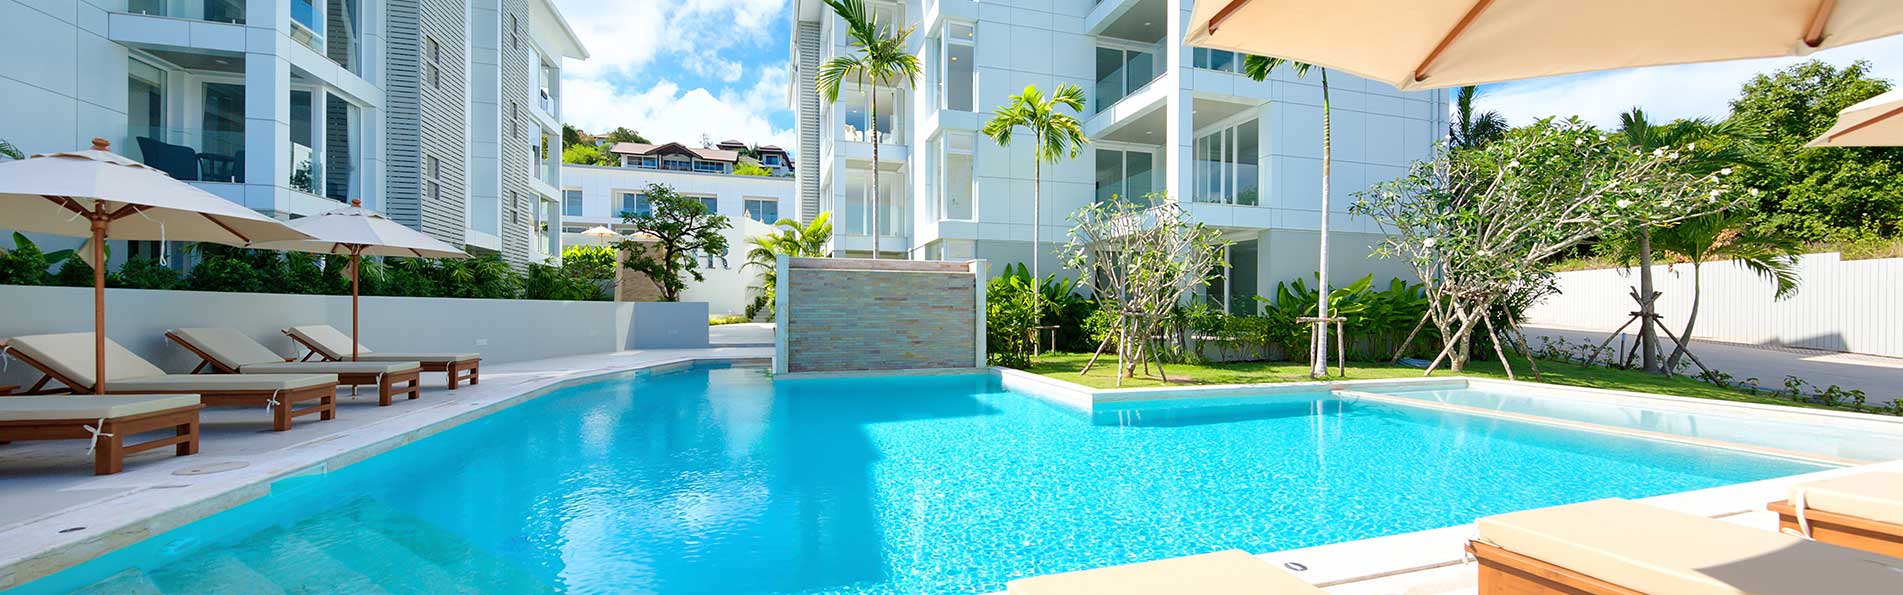 Luxury condominium pool area.